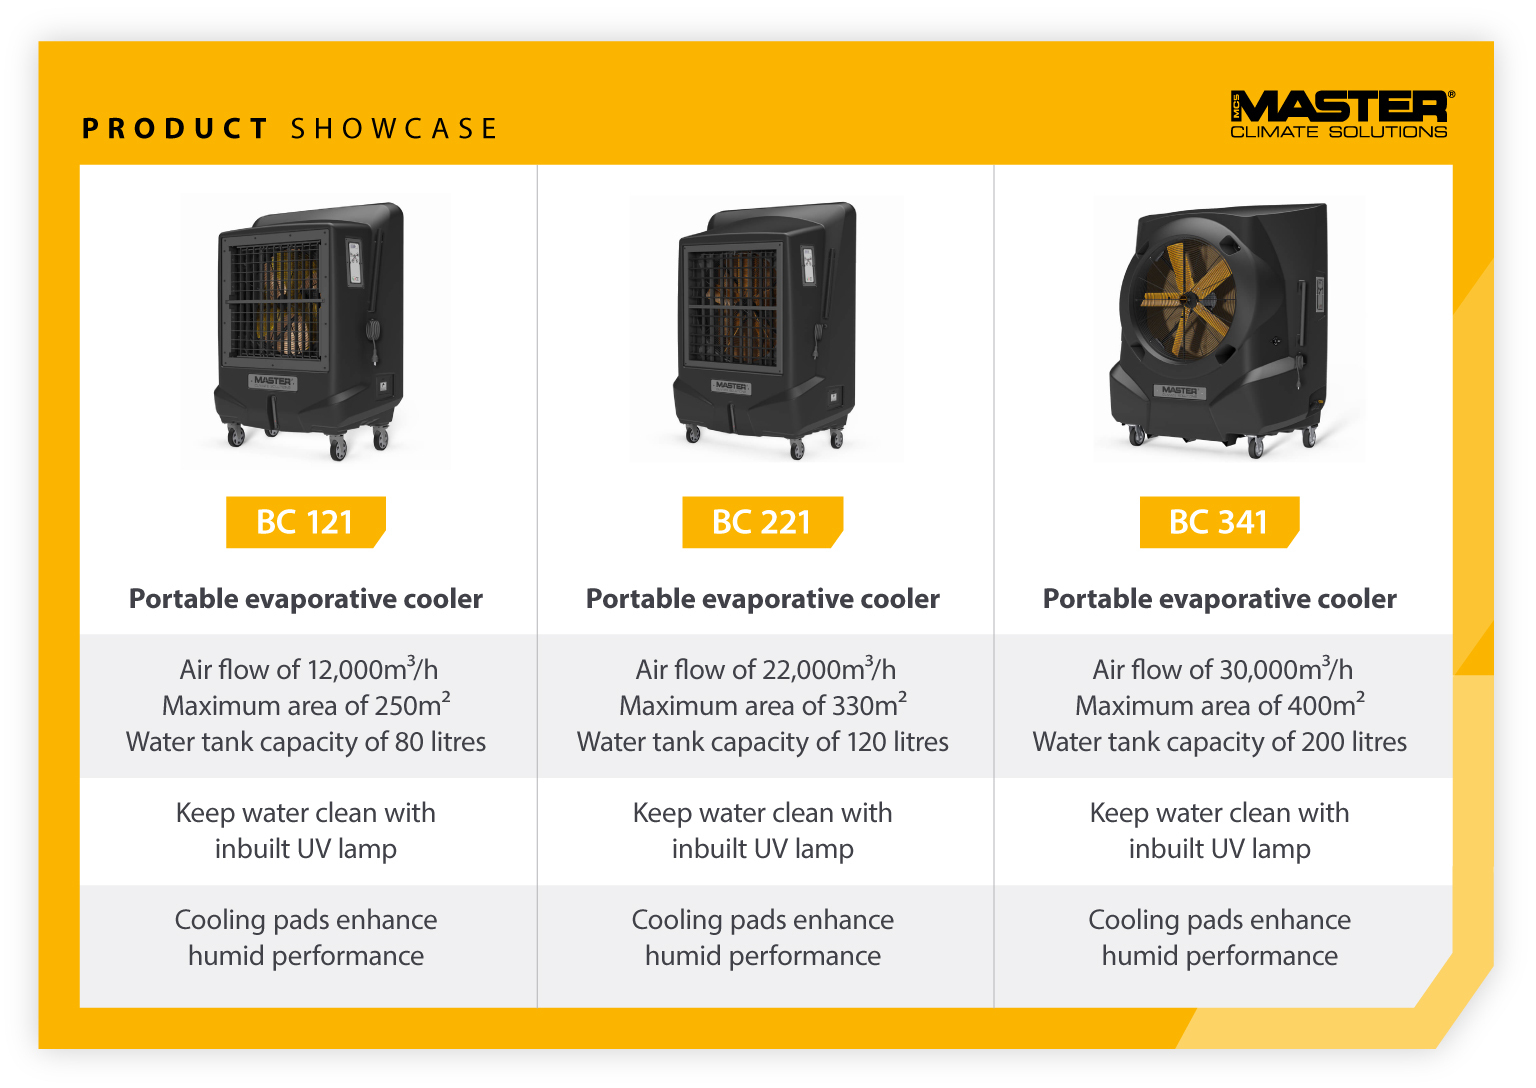 Muestra de productos comparando las características de las unidades portátiles de refrigeración por evaporación Master